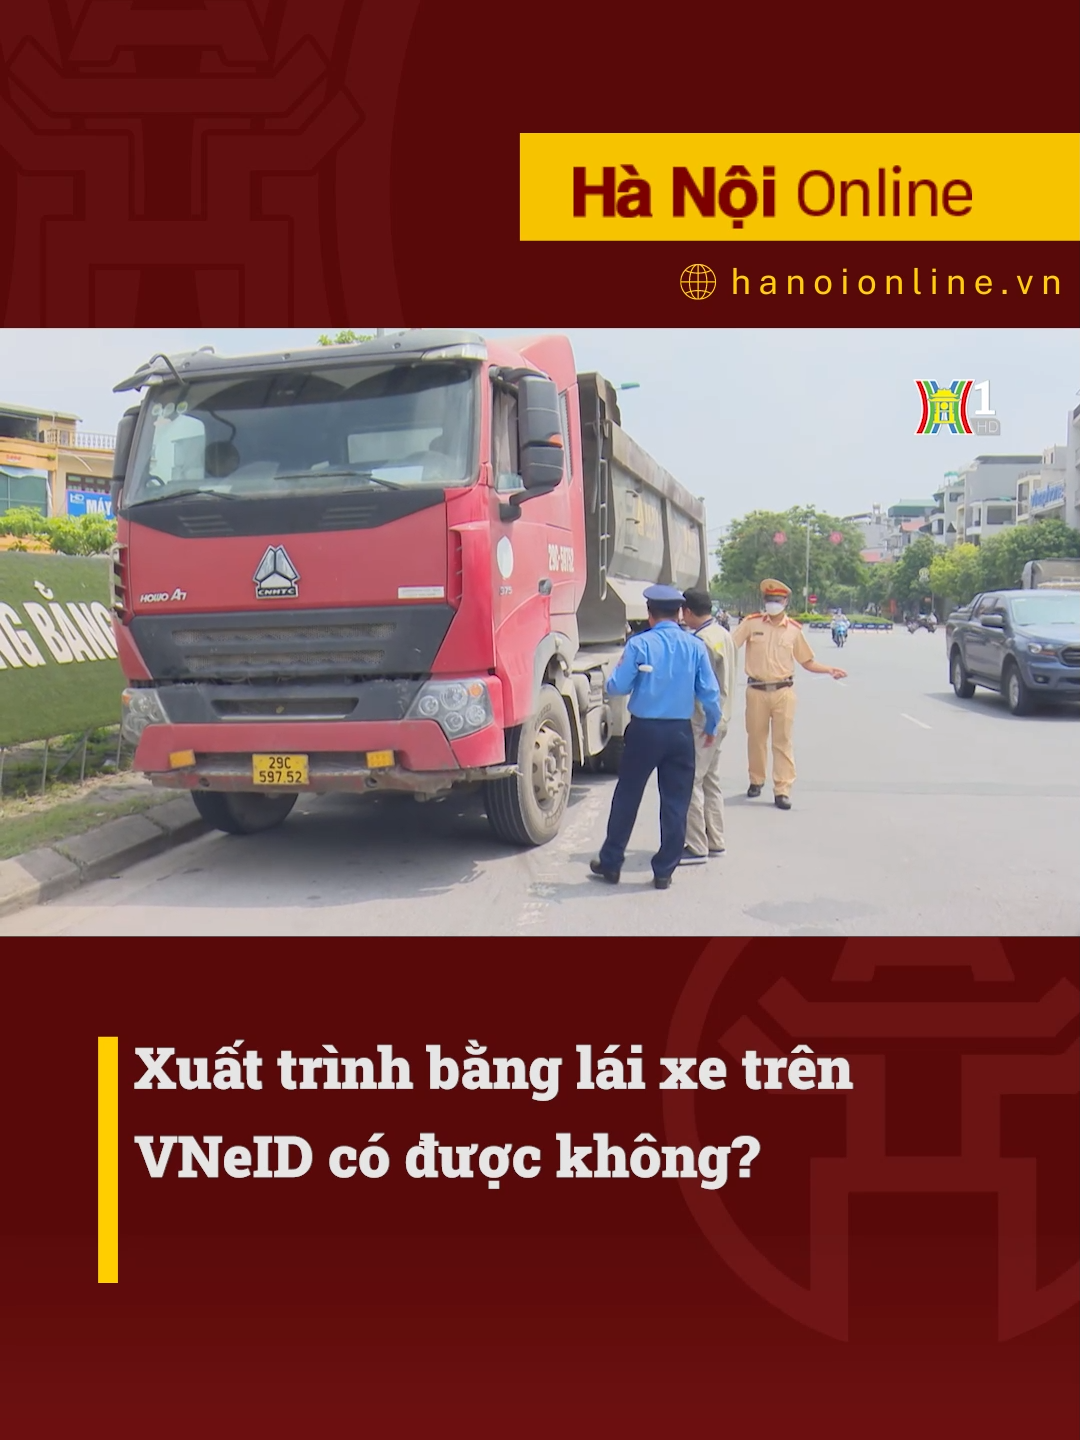 Từ ngày 1/6, người dân có thể xuất trình giấy phép lái xe tích hợp trên VNeID #htvdaihanoi #tiktoknews #socialnews #tintuc #giaothong #gplx #laixe